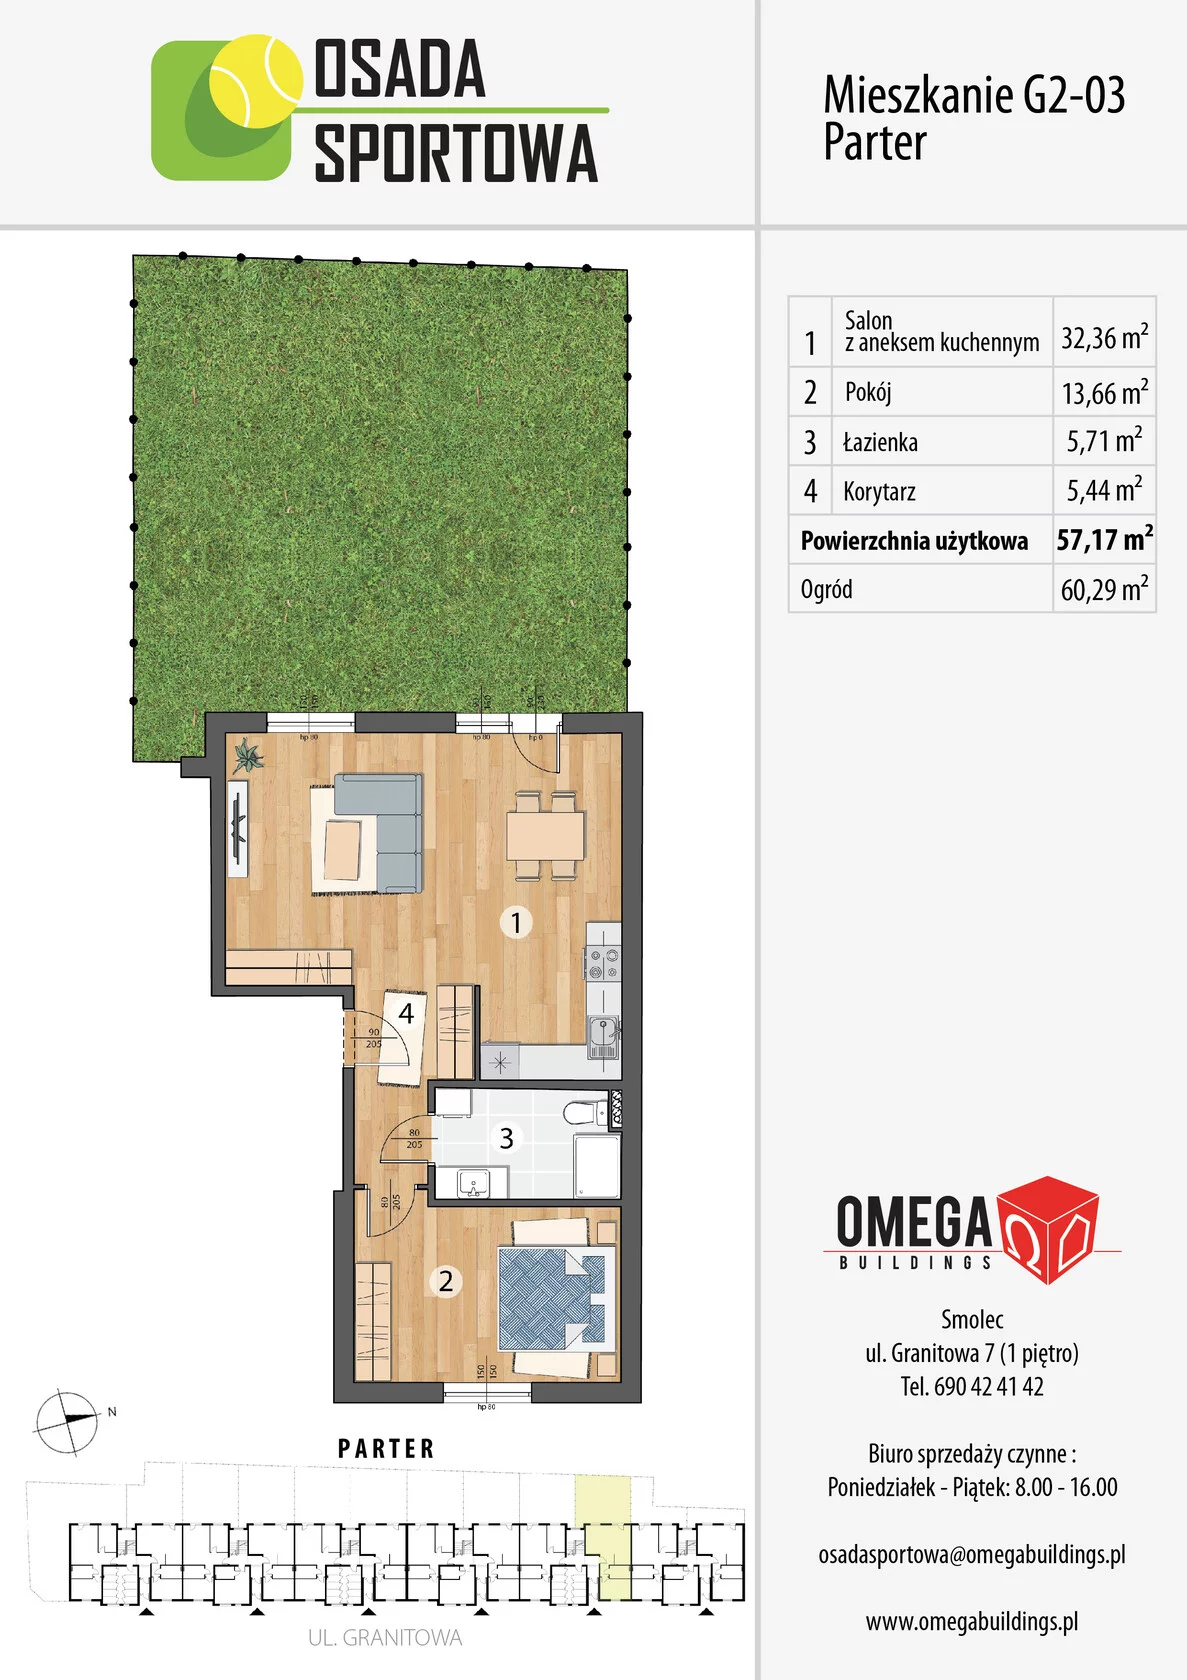 Mieszkanie 57,17 m², parter, oferta nr G2-03, Osada Sportowa Budynek G, Smolec, ul. Granitowa 52-62